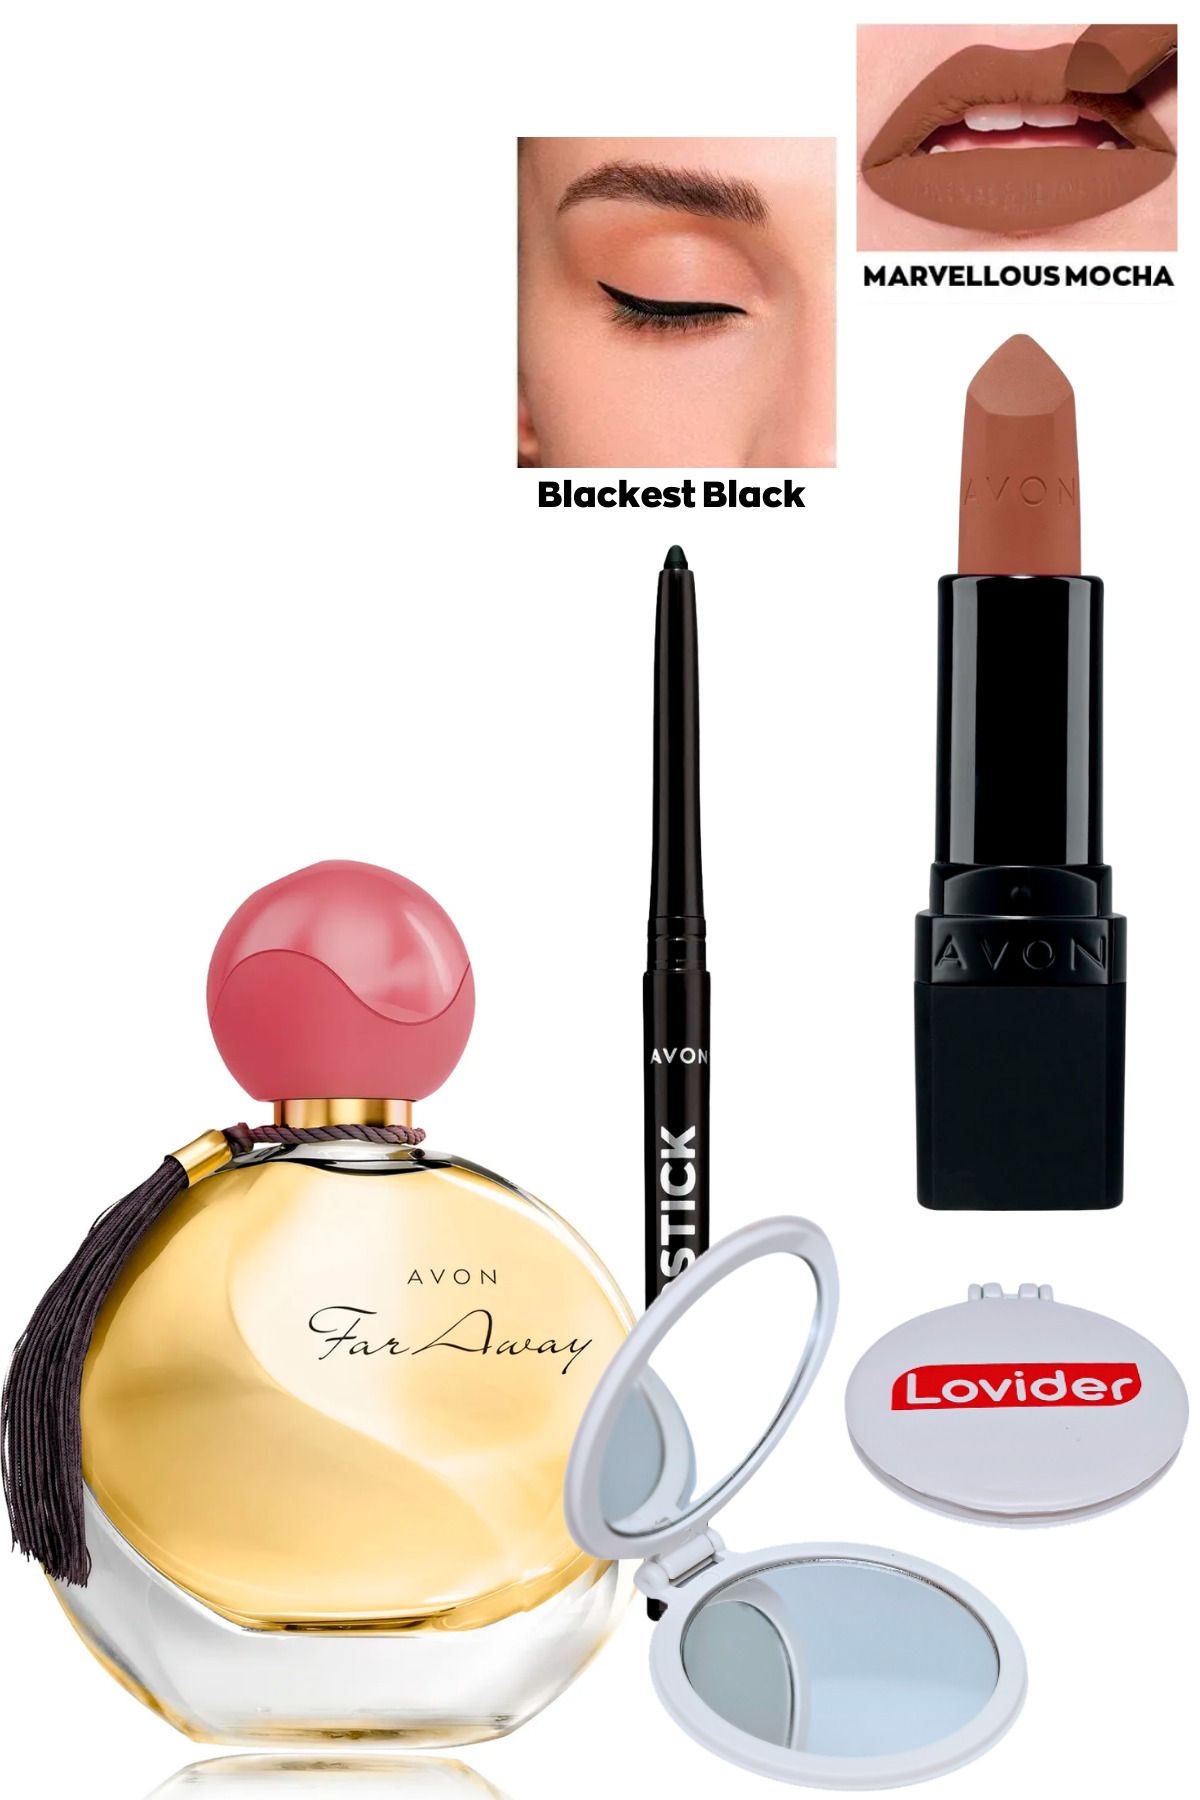 Avon Far Away Kadın Parfüm + Siyah Göz Kalemi + Marvellous Mocha Mat Ruj + Lovider Cep Aynası